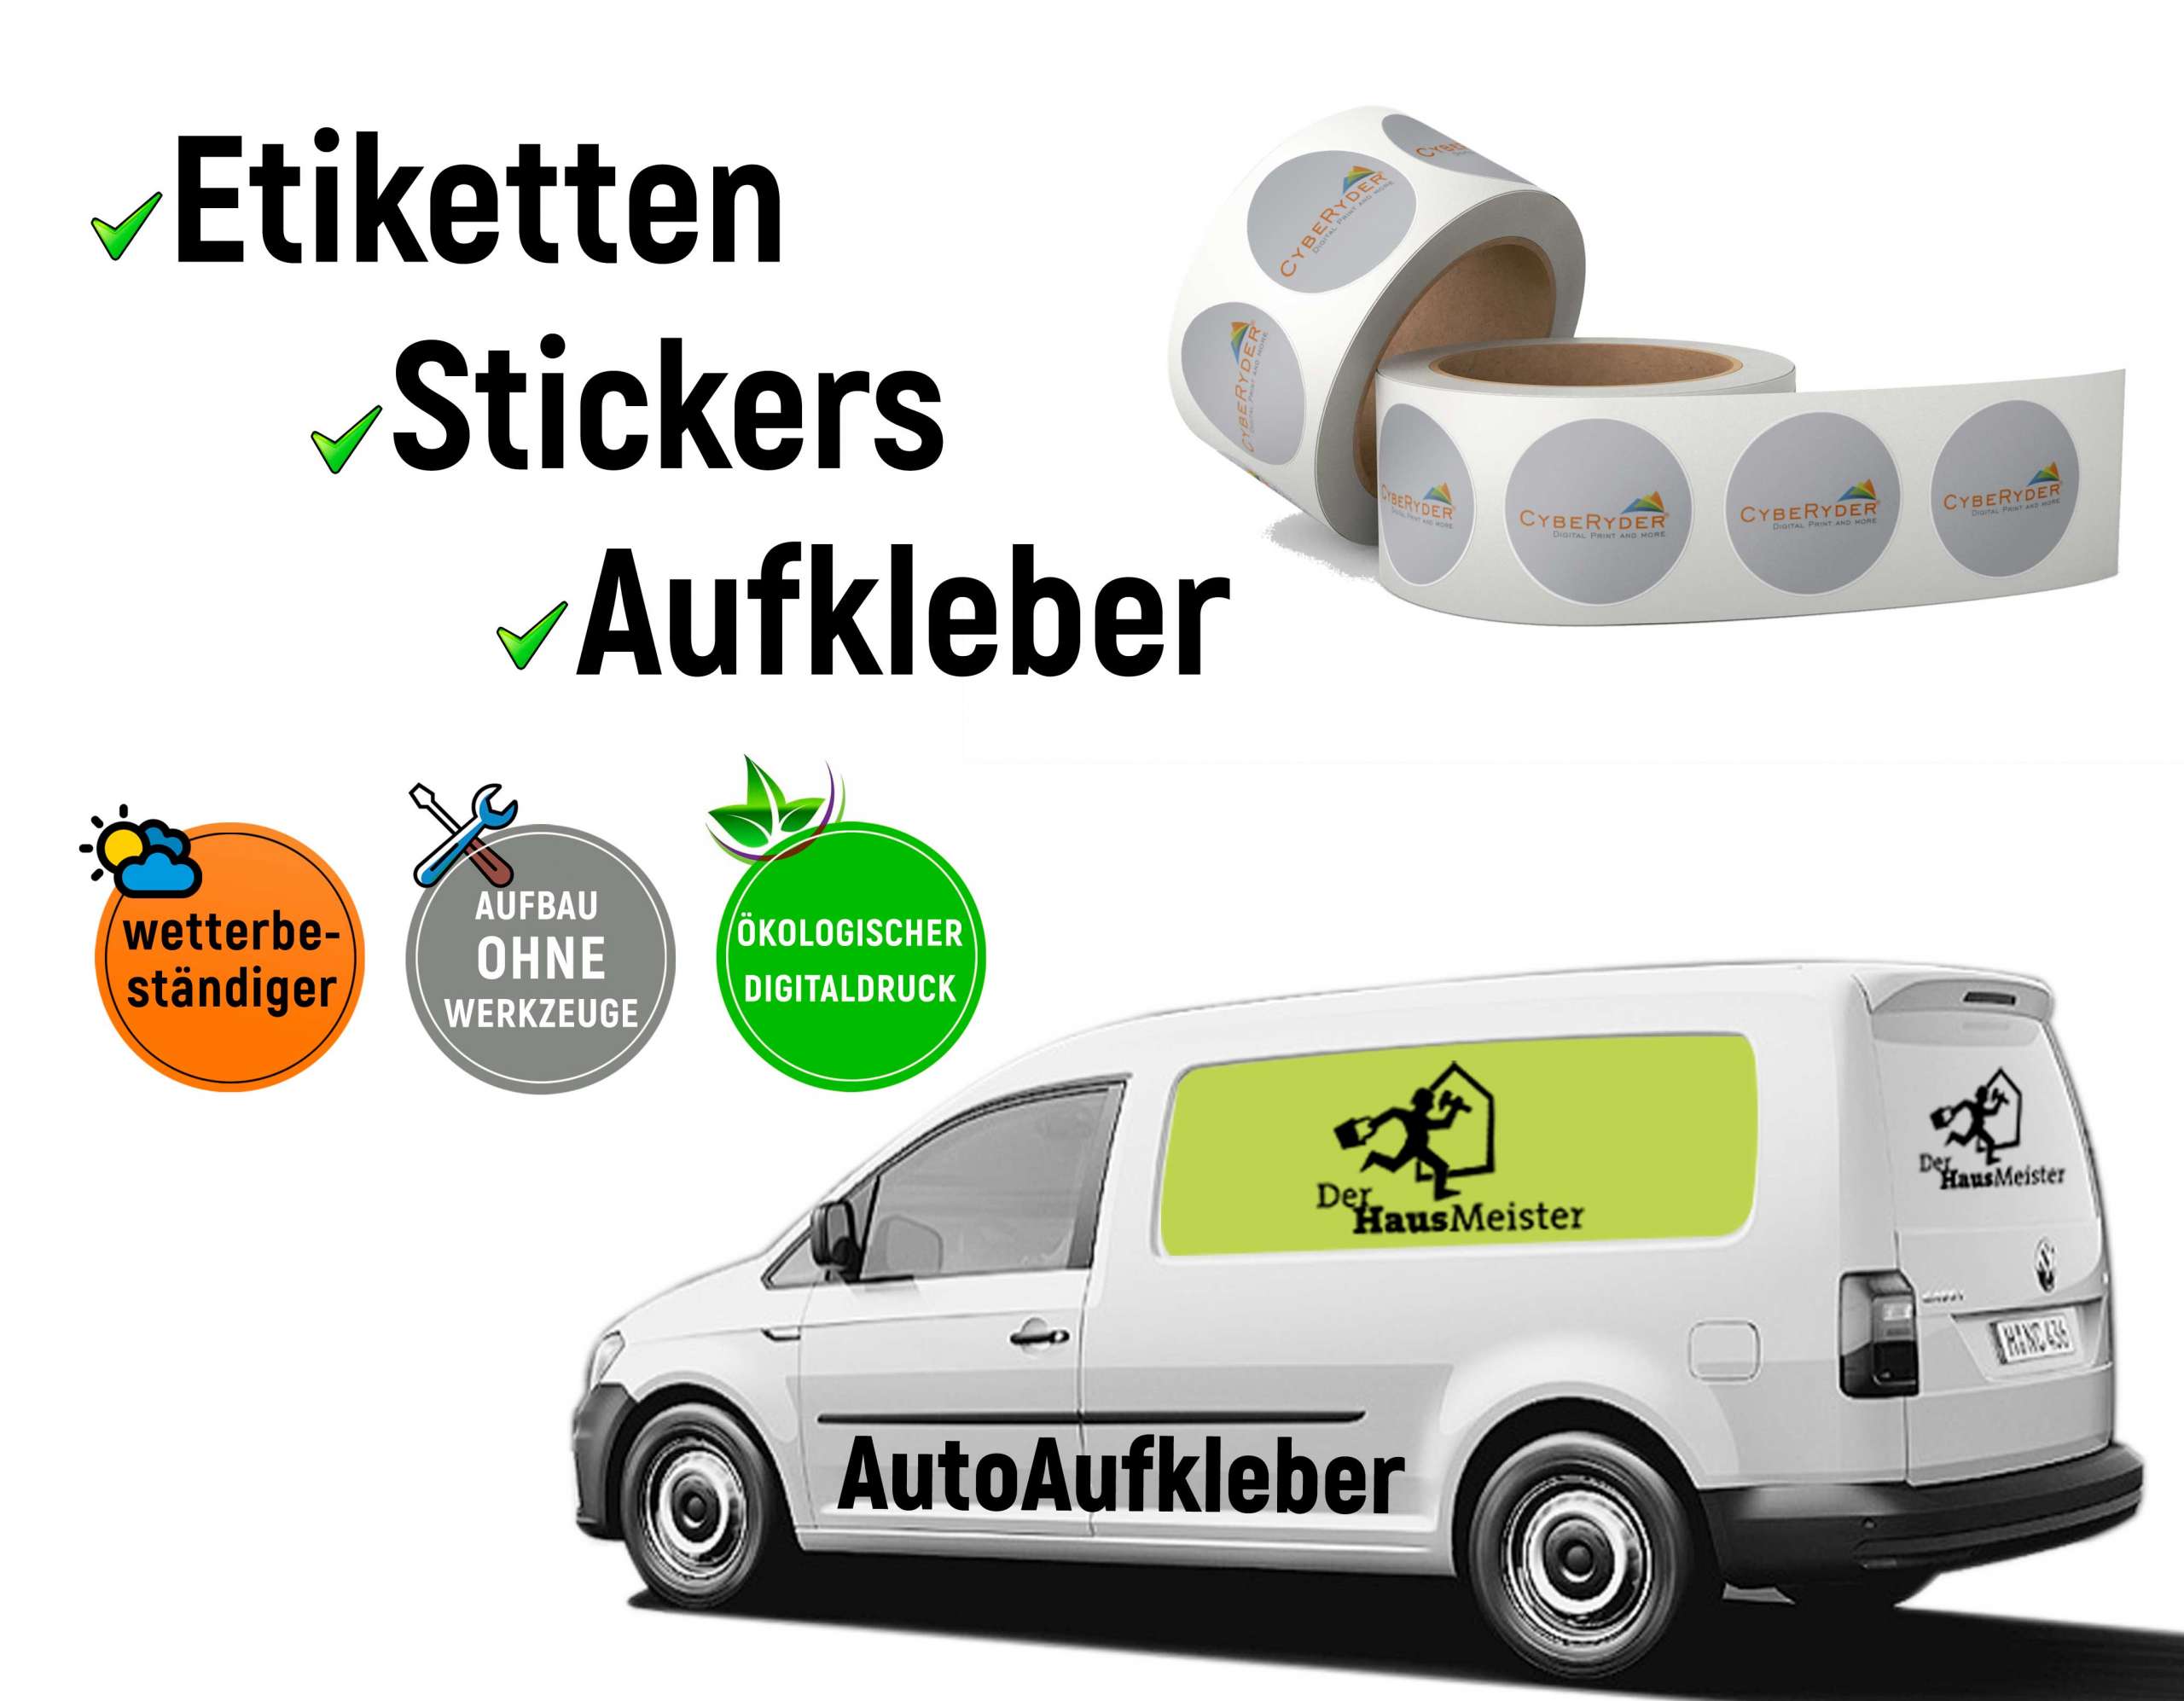 https://www.cyberyder.de/wp-content/uploads/2021/11/Sticker_Etiketten_Autoaufkleber-scaled.jpg